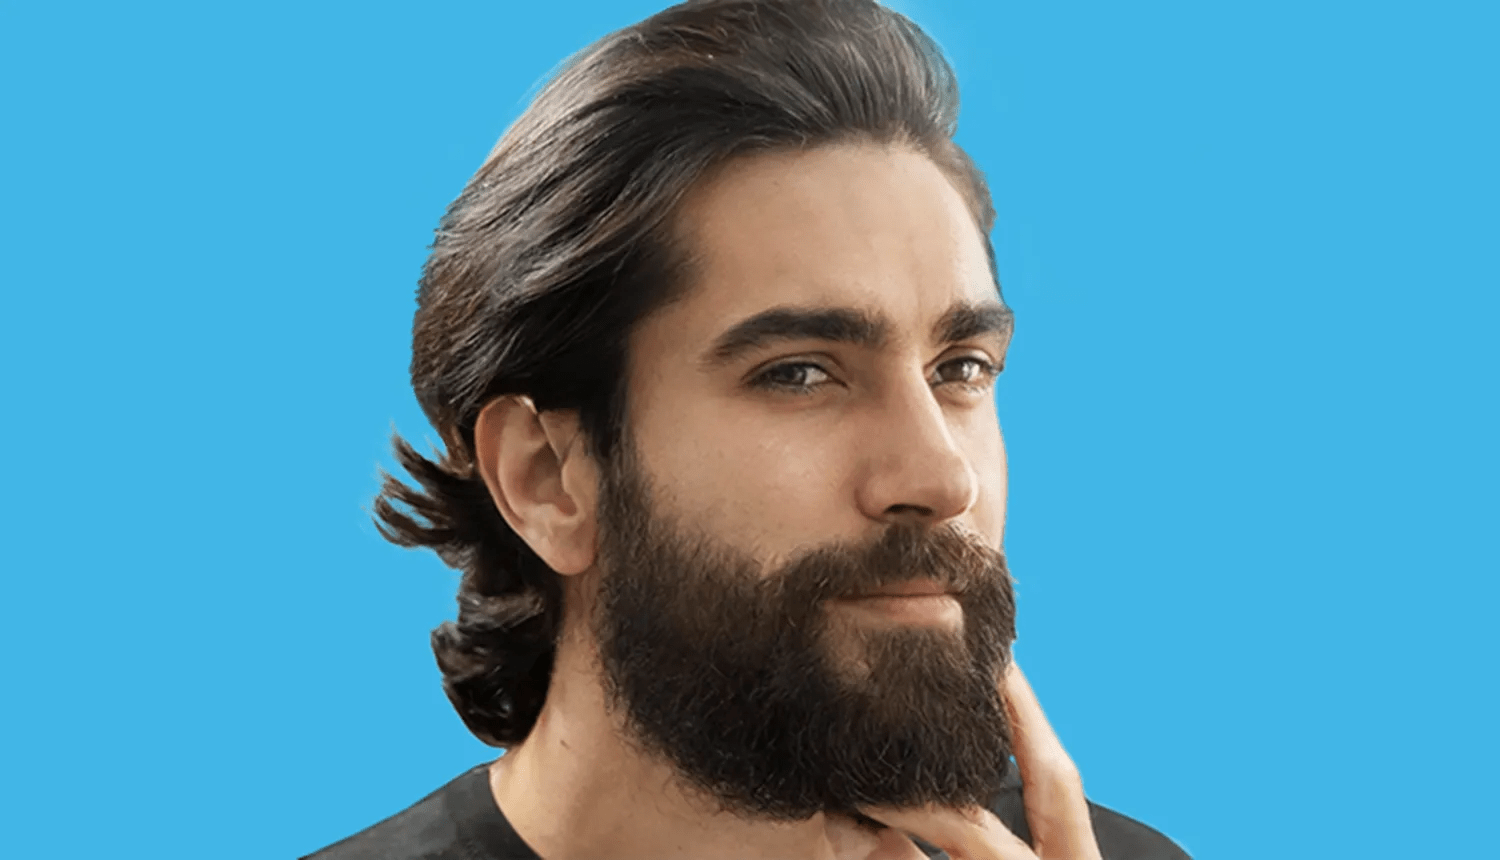 Qual o melhor modelo de barba para cada formato de rosto? - Dr. JONES